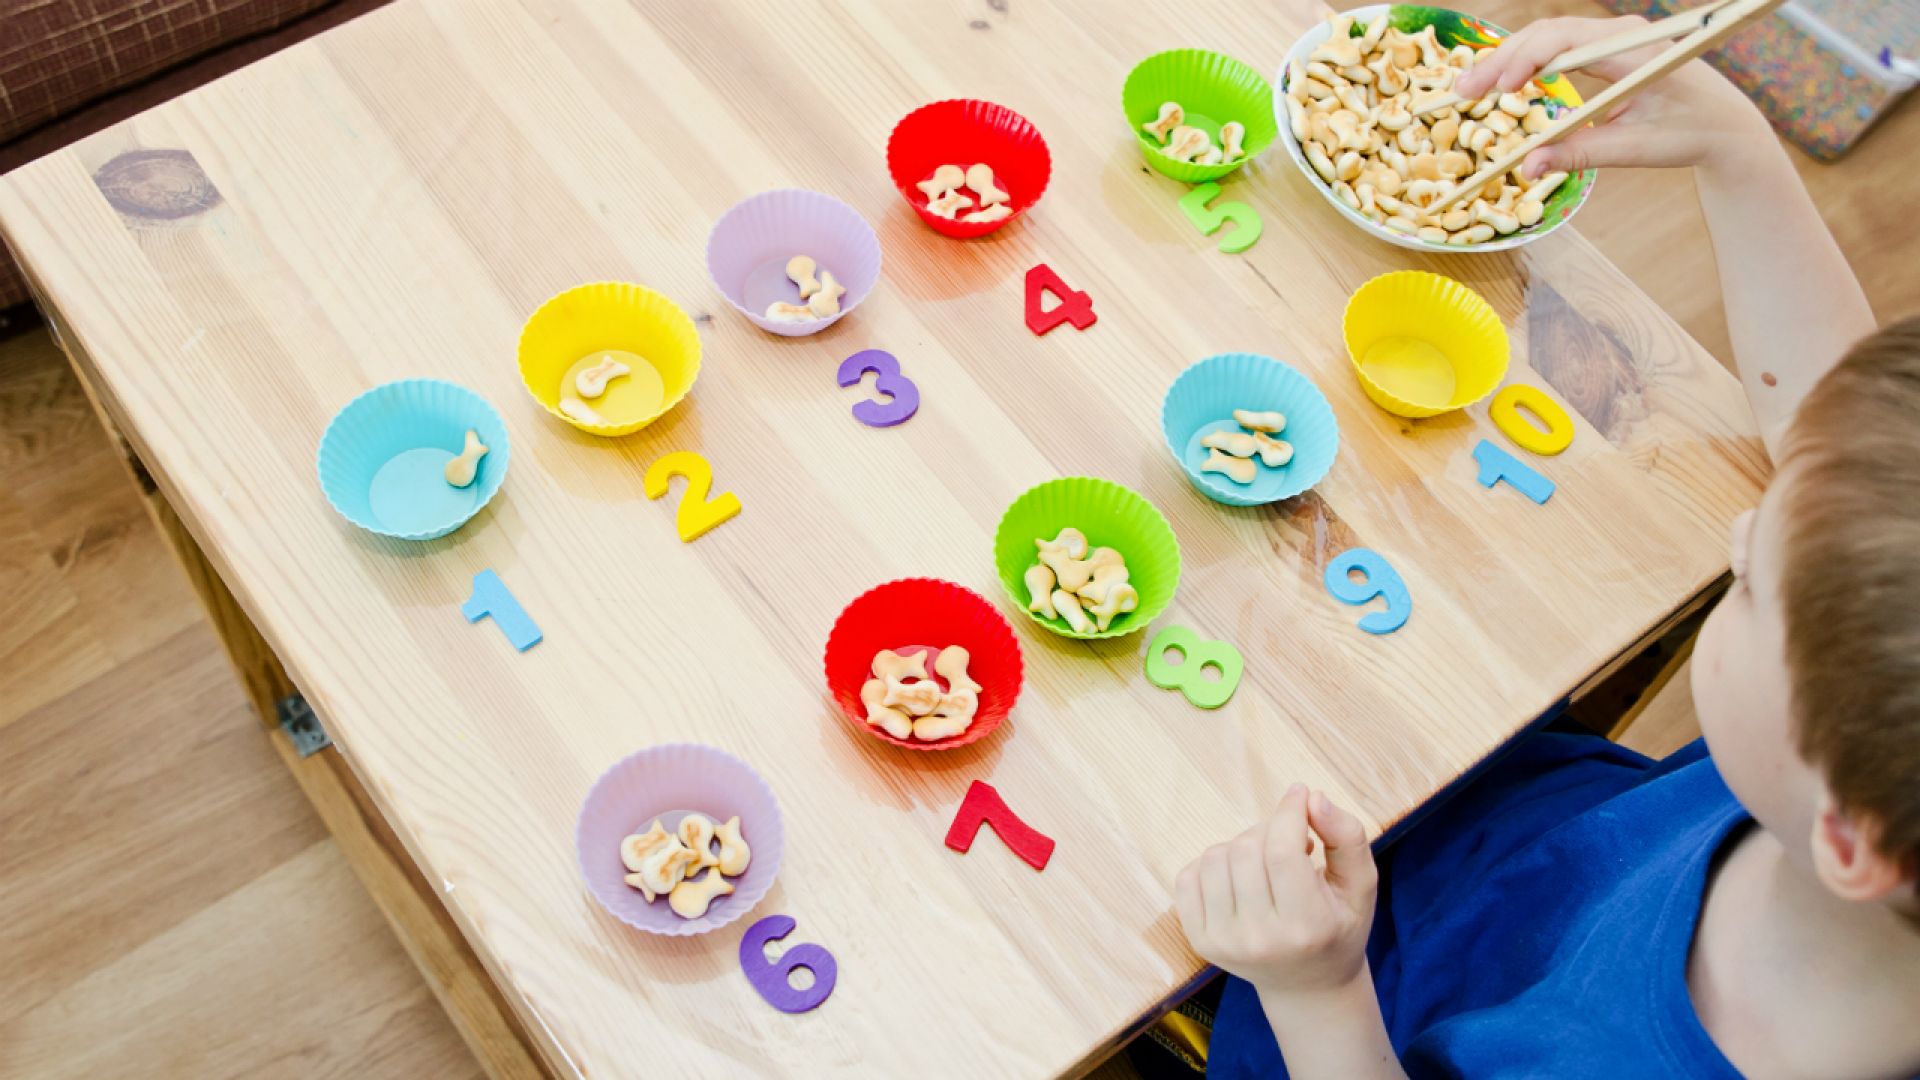 Игра можно обучение. Развивашки для детей 2-3 года Монтессори. Igri Montessori для детей 3 года. Игры Монтессори для детей 3-4 лет. Игры по методике Монтессори для детей 2-3 лет.